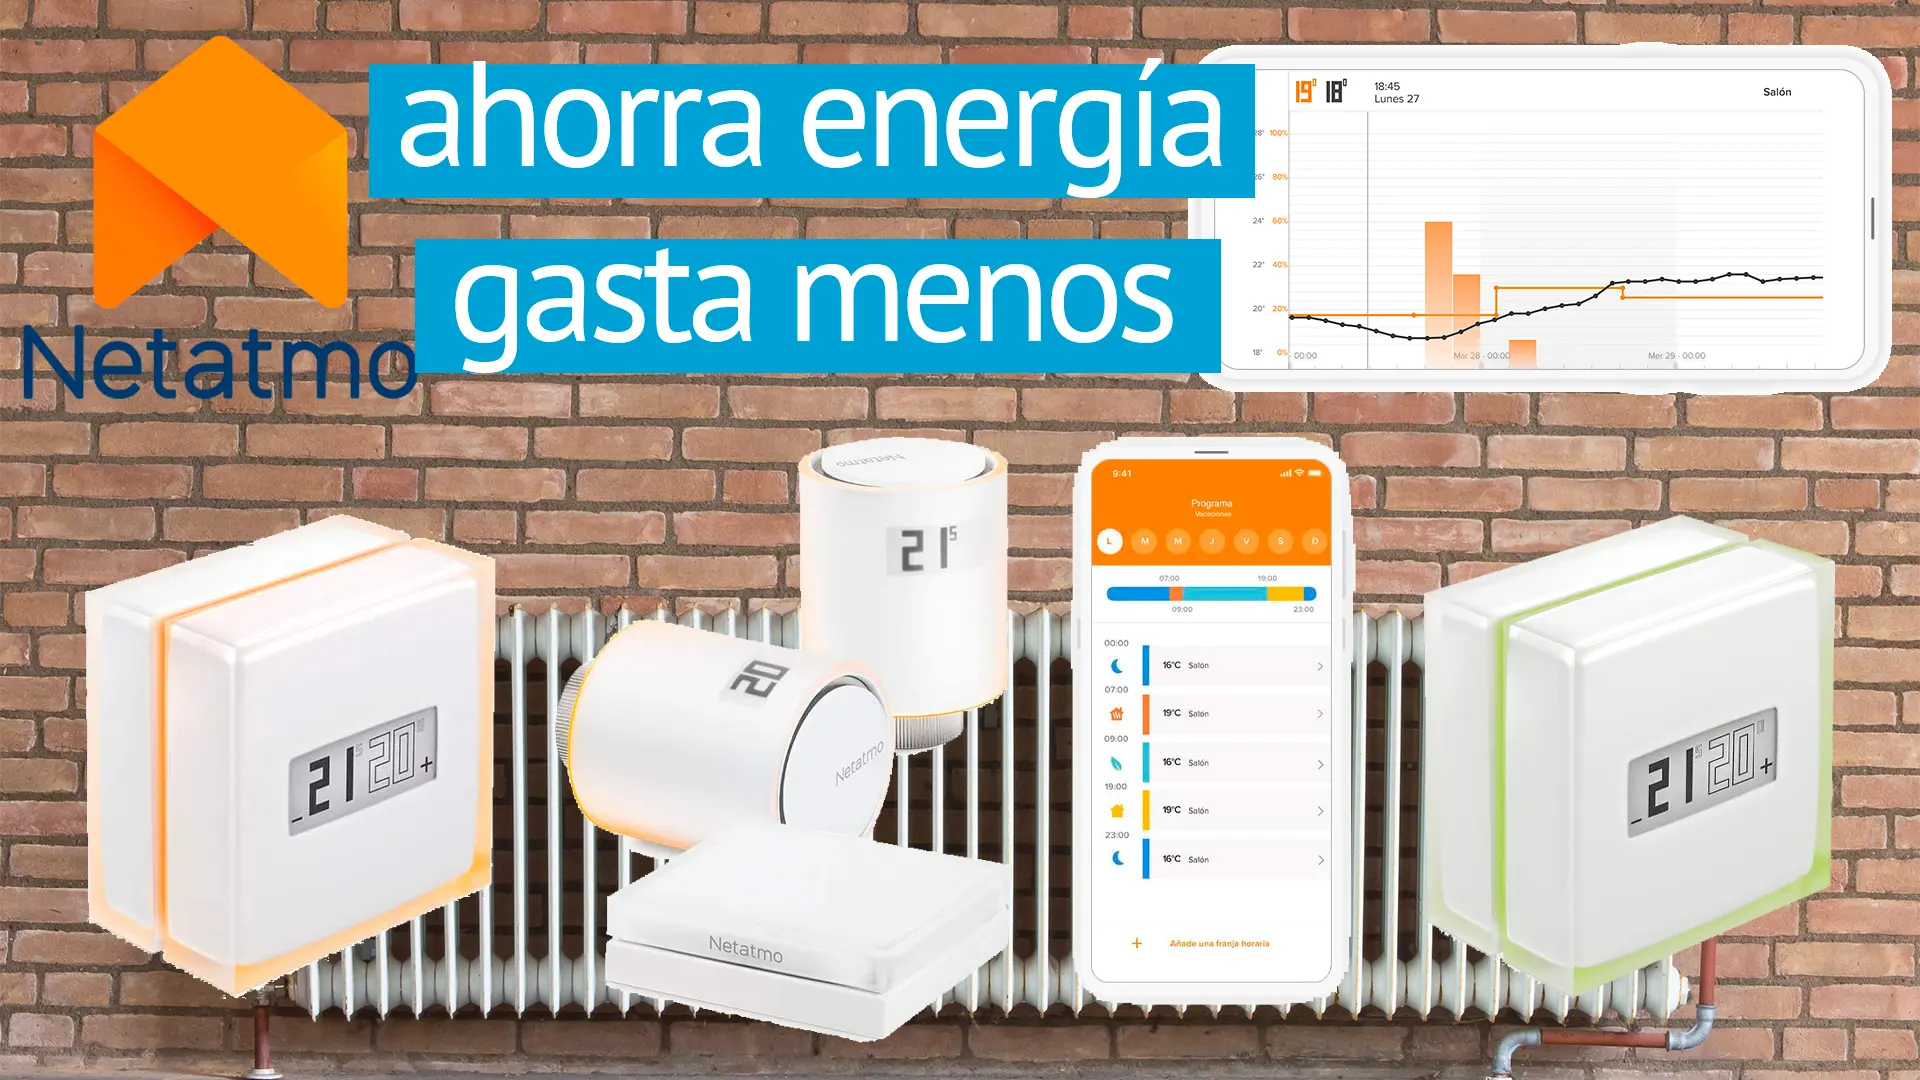 Termostatos Netatmo inteligentes con o sin acceso a la caldera o fuente de calor, ahorran energía y gastan menos.